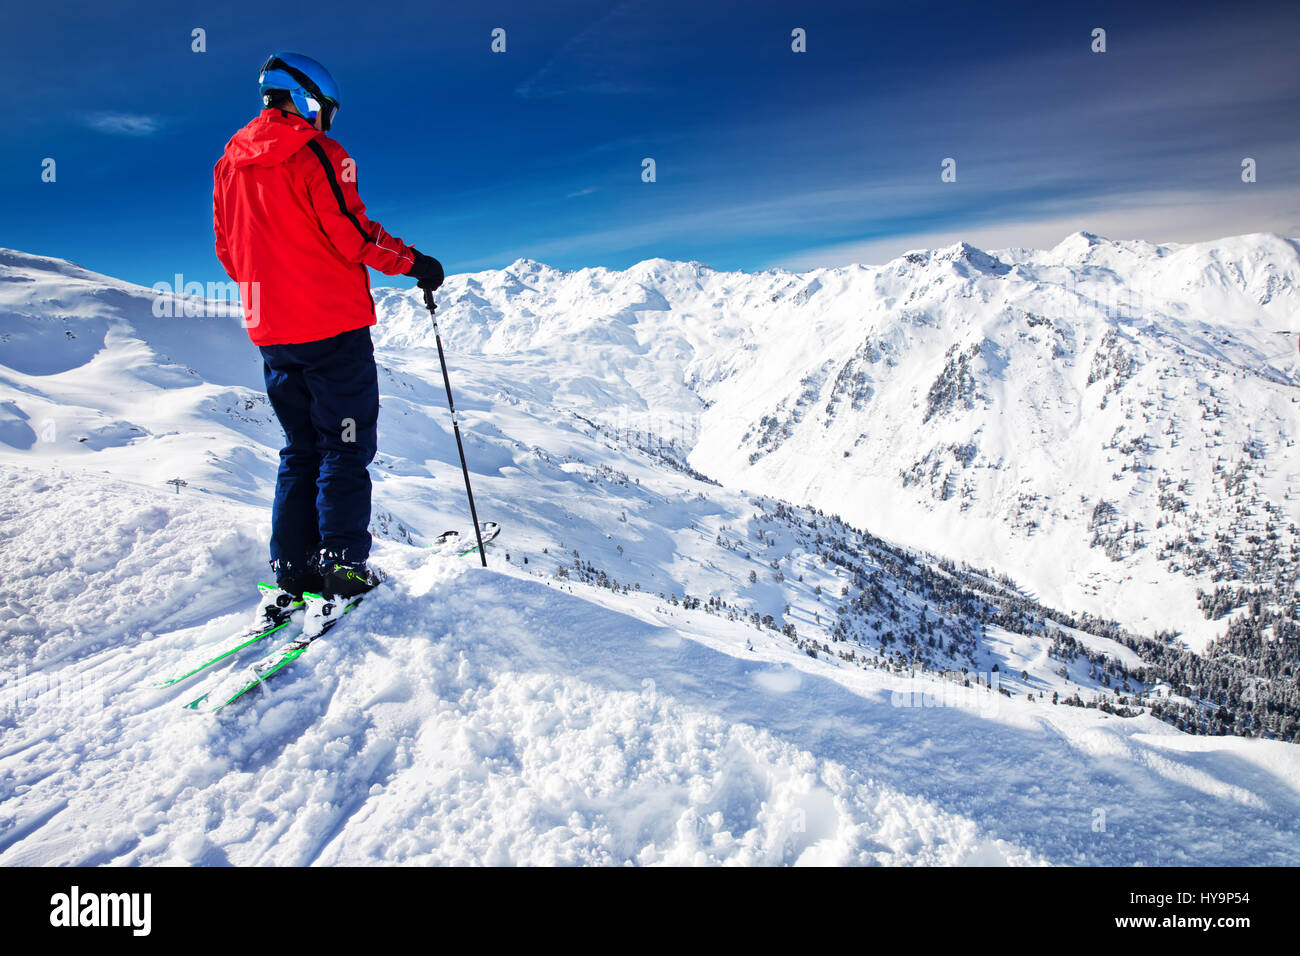 L'homme jouissant de la vue magnifique avant le ski freeride en célèbre station de ski dans les Alpes, Télésieges Zillertal, Autriche Banque D'Images